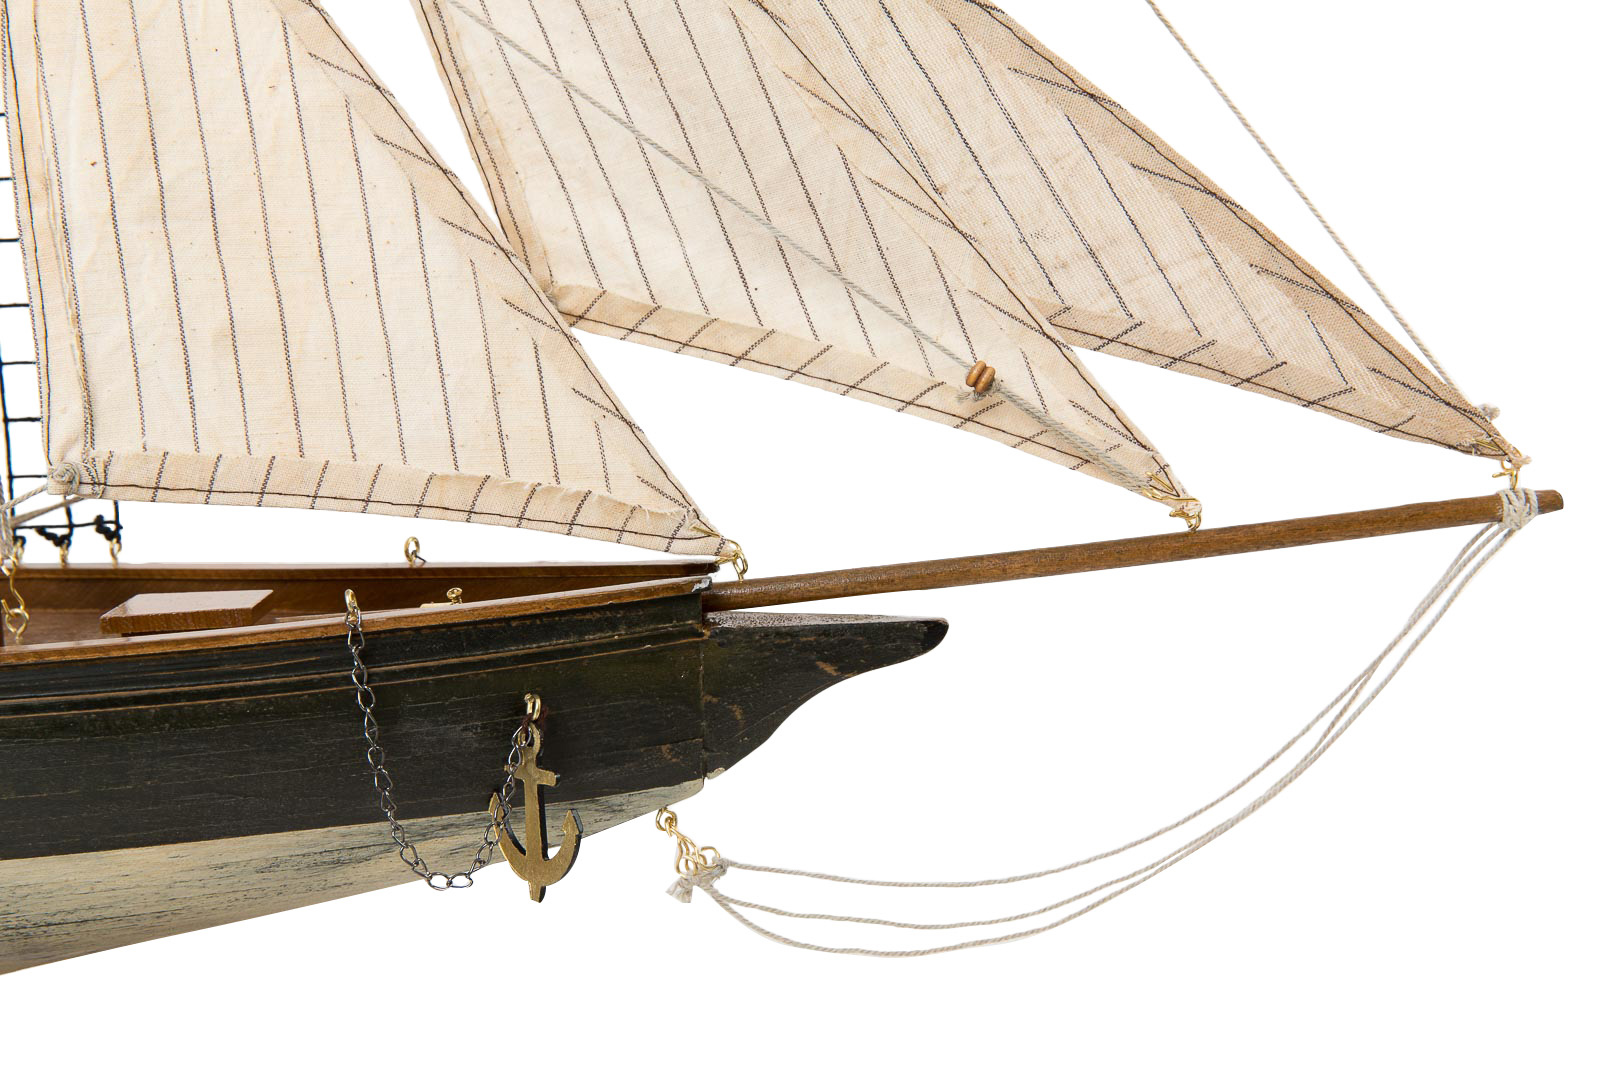 Segelyacht Segelschiff Holz Boot 85cm hoch wählen zwischen 2 Modellen 